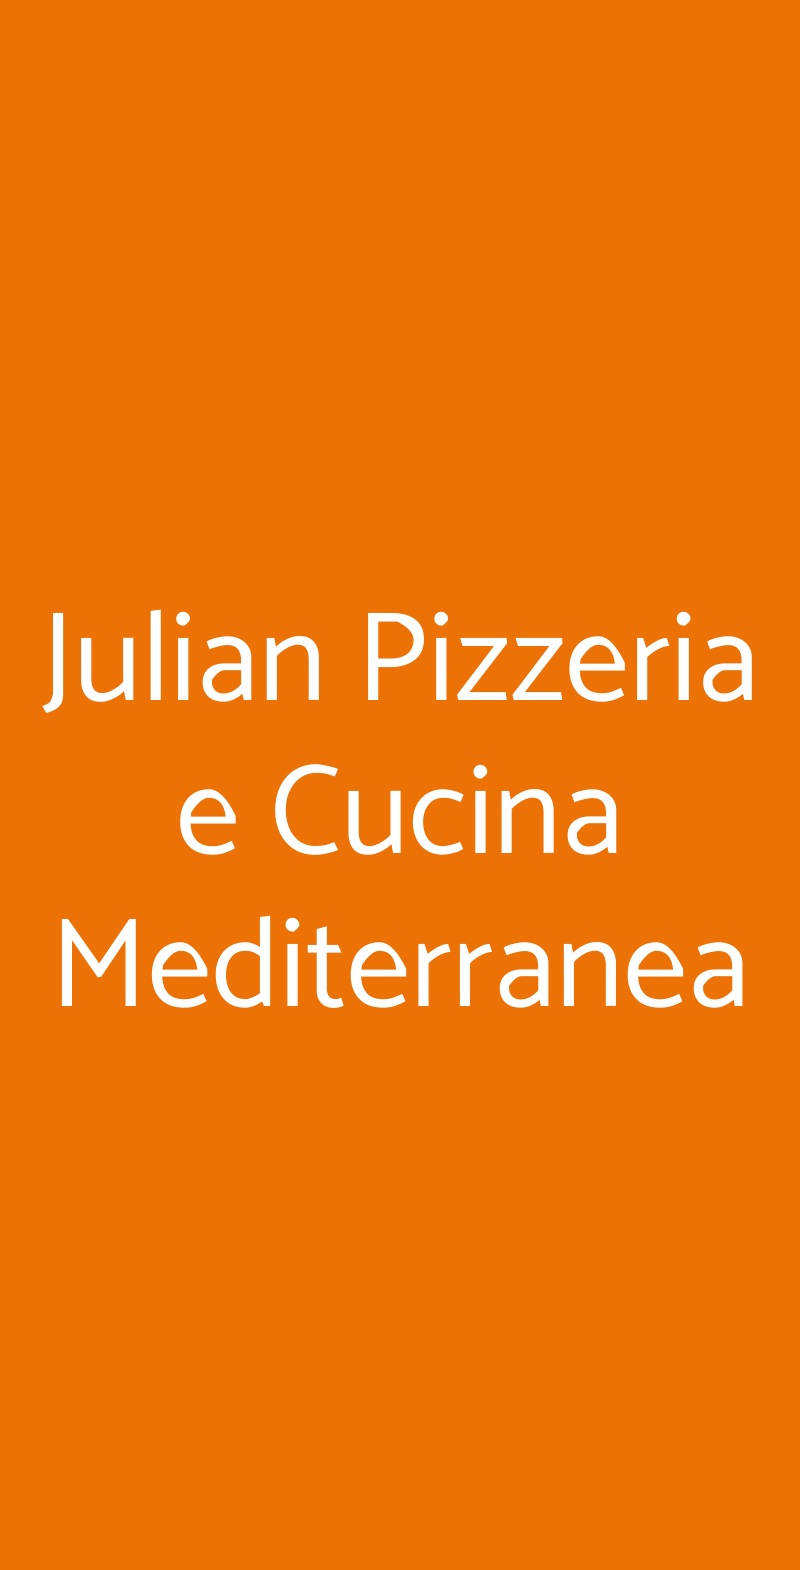 Julian Pizzeria e Cucina Mediterranea Milano menù 1 pagina